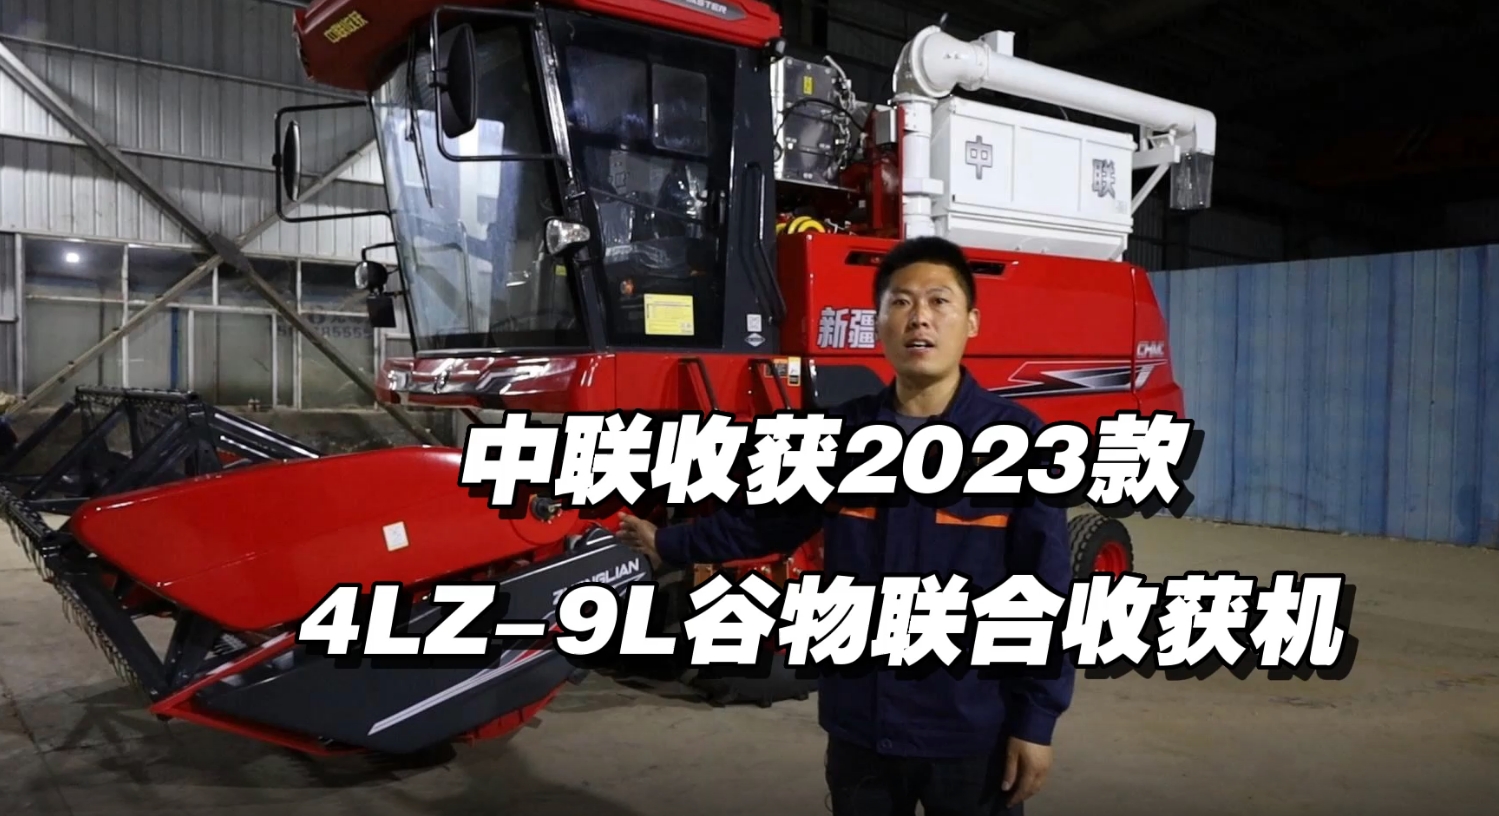 2023款4HJL-9L谷物联合收获机讲解视频